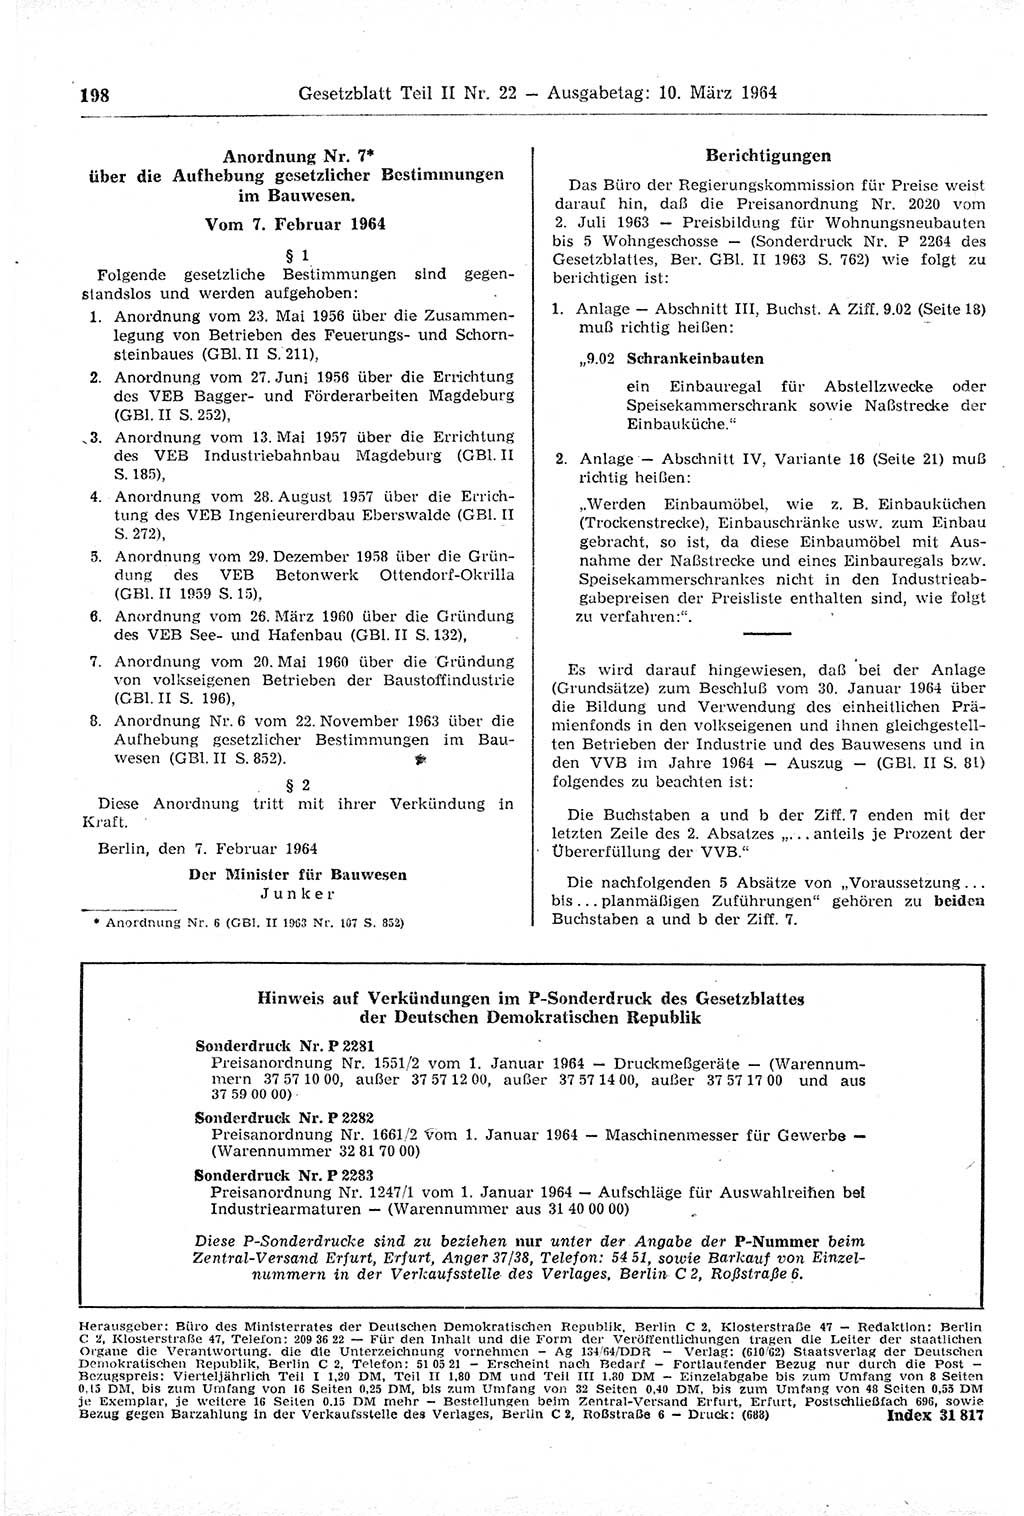 Gesetzblatt (GBl.) der Deutschen Demokratischen Republik (DDR) Teil ⅠⅠ 1964, Seite 198 (GBl. DDR ⅠⅠ 1964, S. 198)